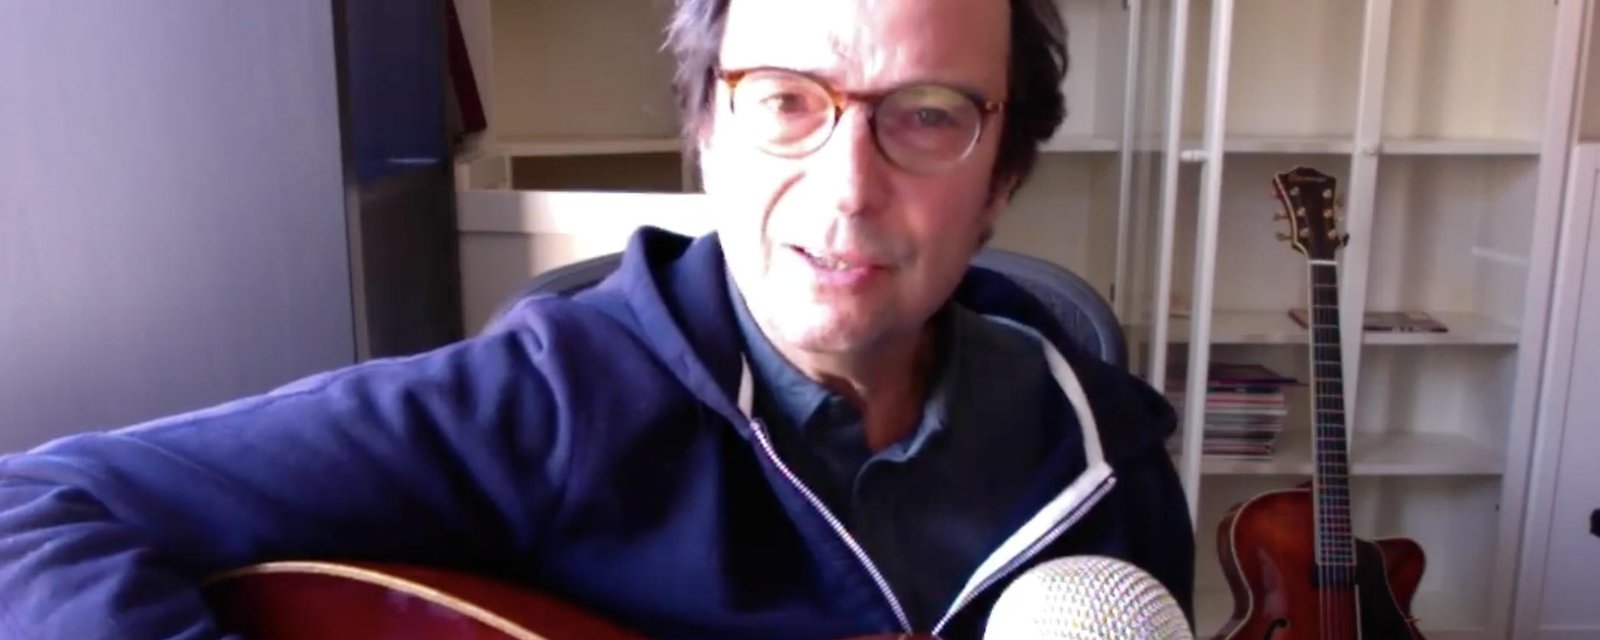 Michel Rivard profite de son confinement pour composer une chanson qui devient complètement virale